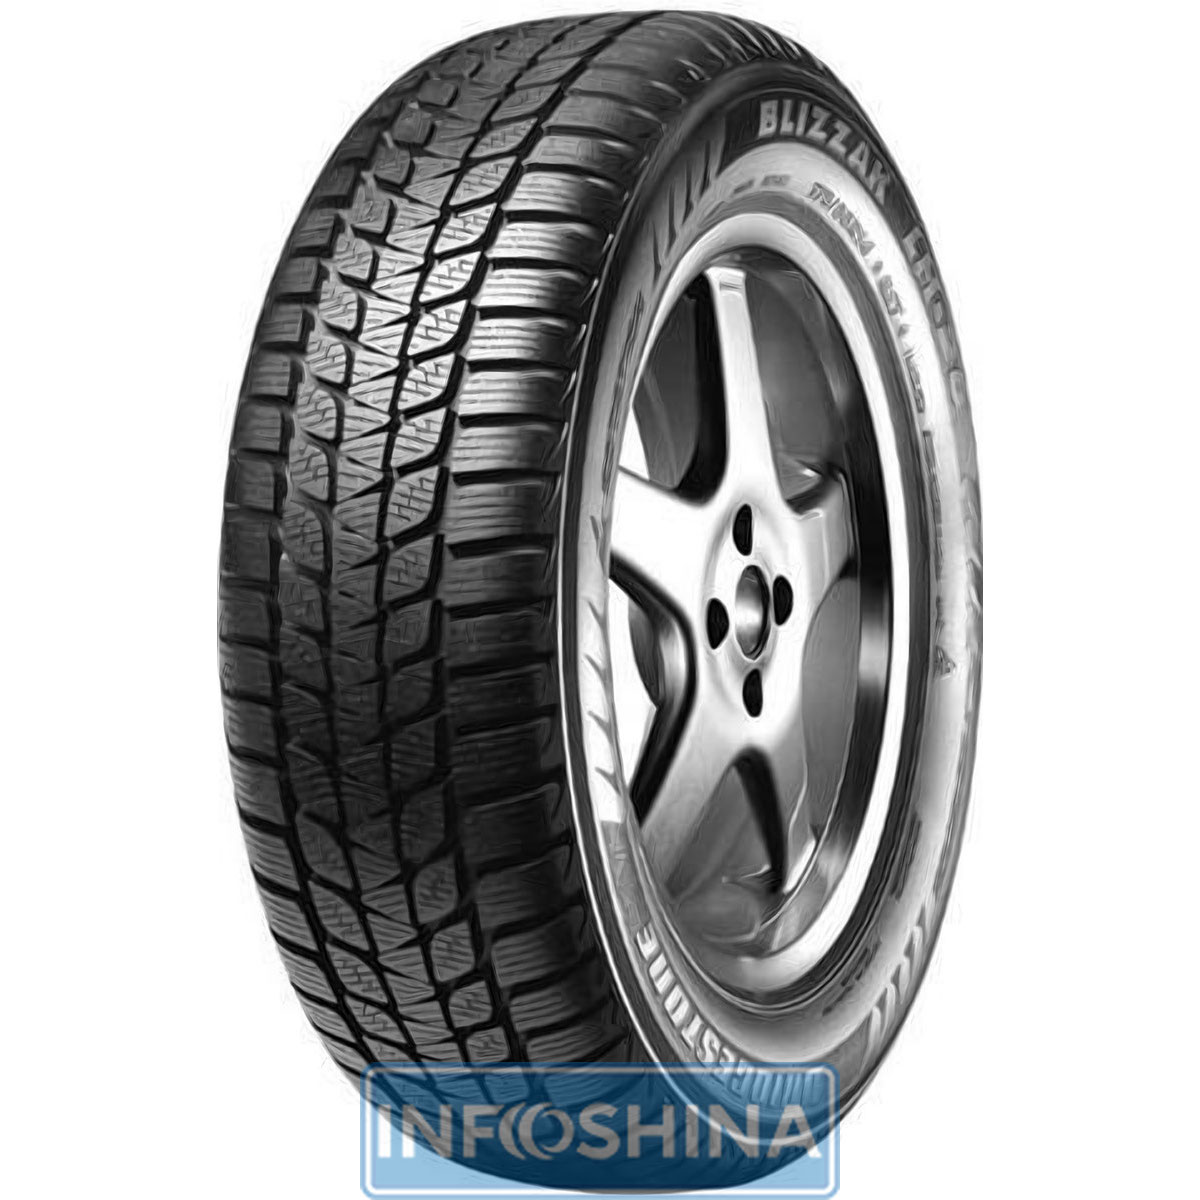 Купить шины Bridgestone Blizzak LM-20 185/65 R15 92T